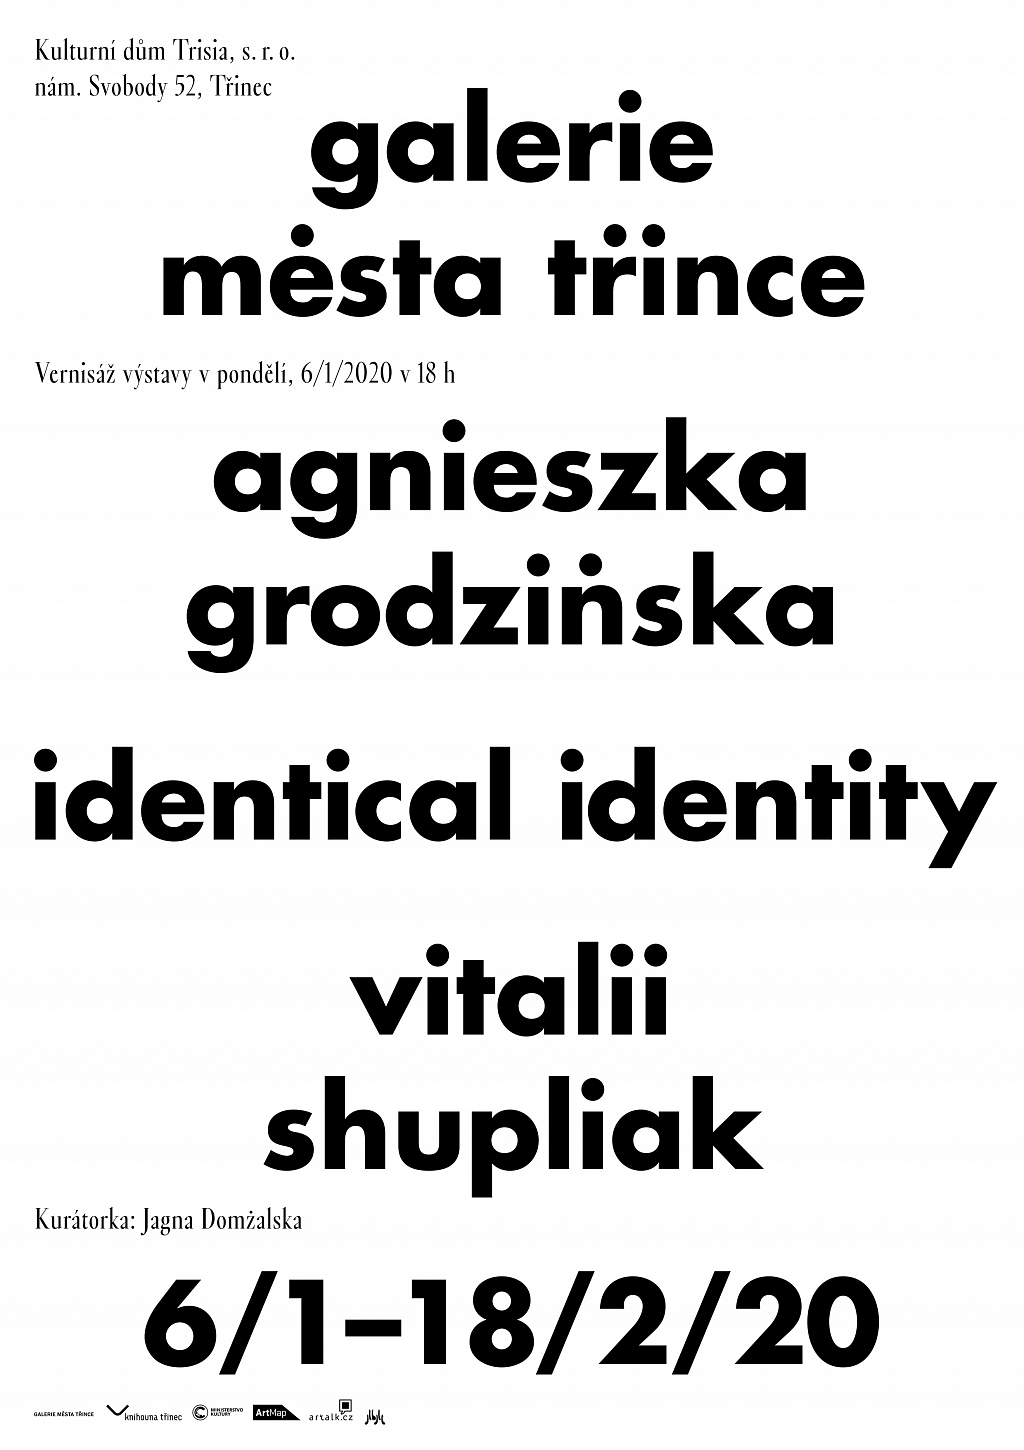 Agnieszka Grodzińska a Vitalii Shupliak: Identical identity